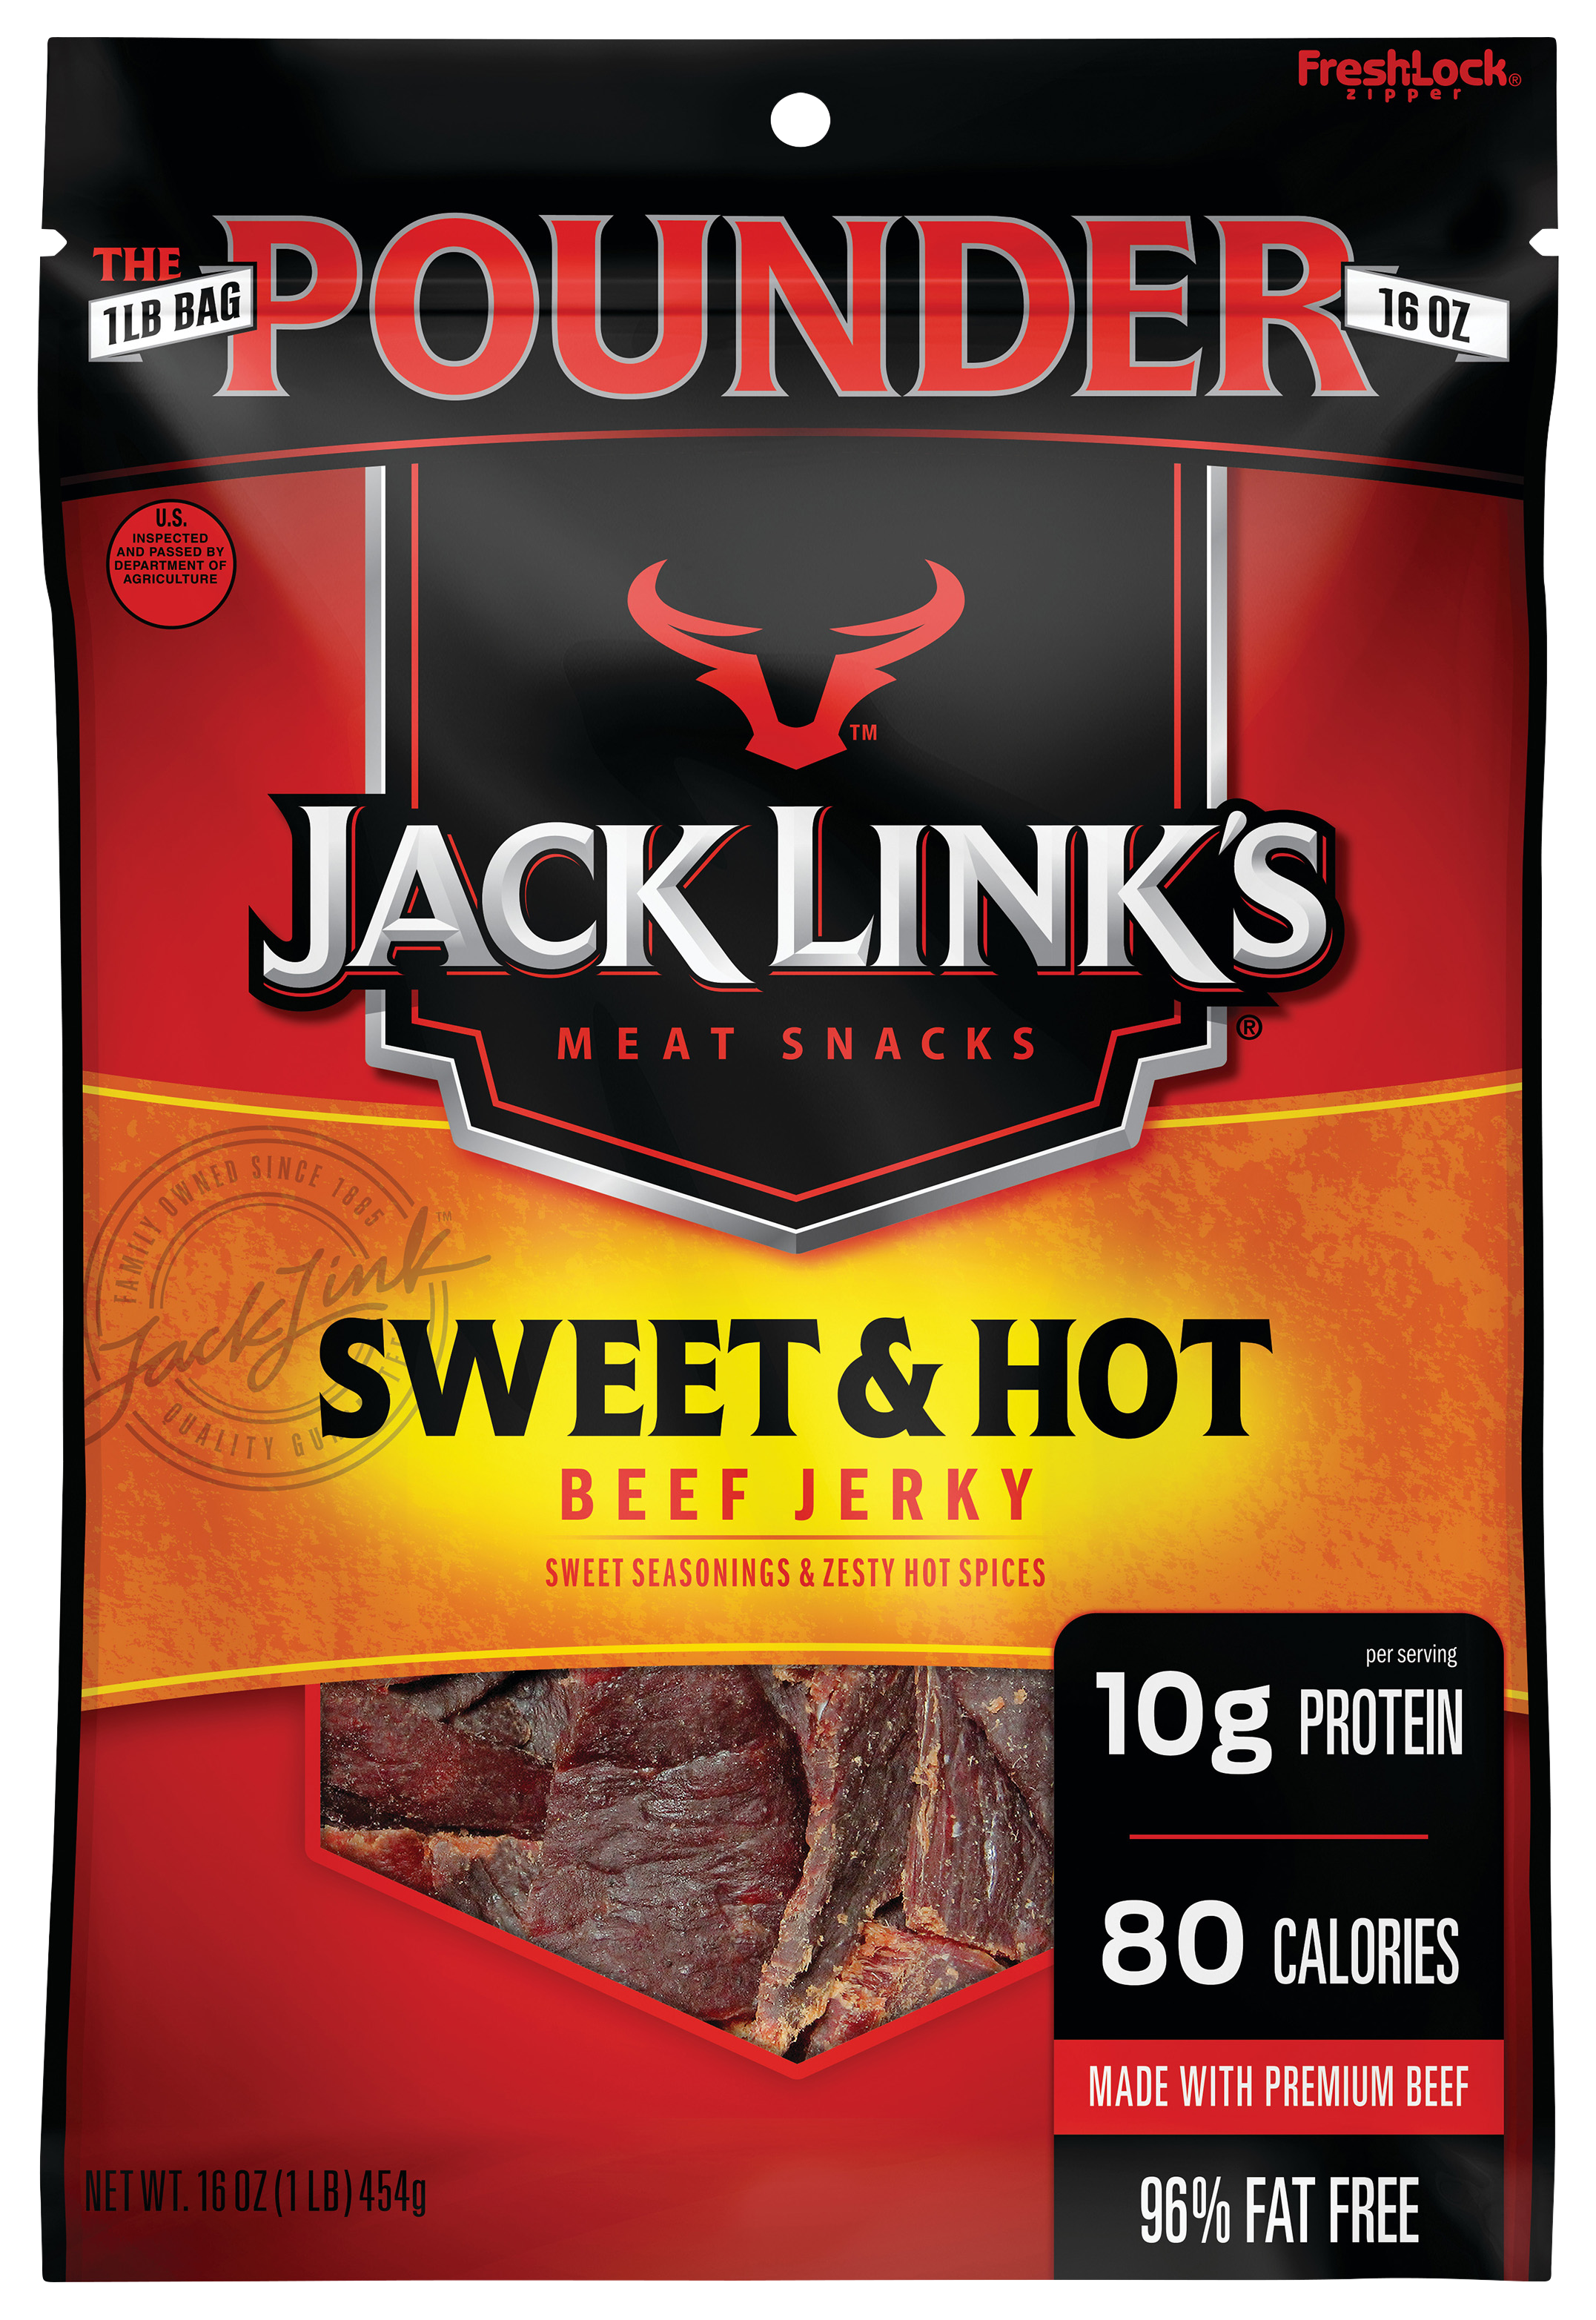 Jack Link's Sweet & Hot Beef Jerky - 16 oz